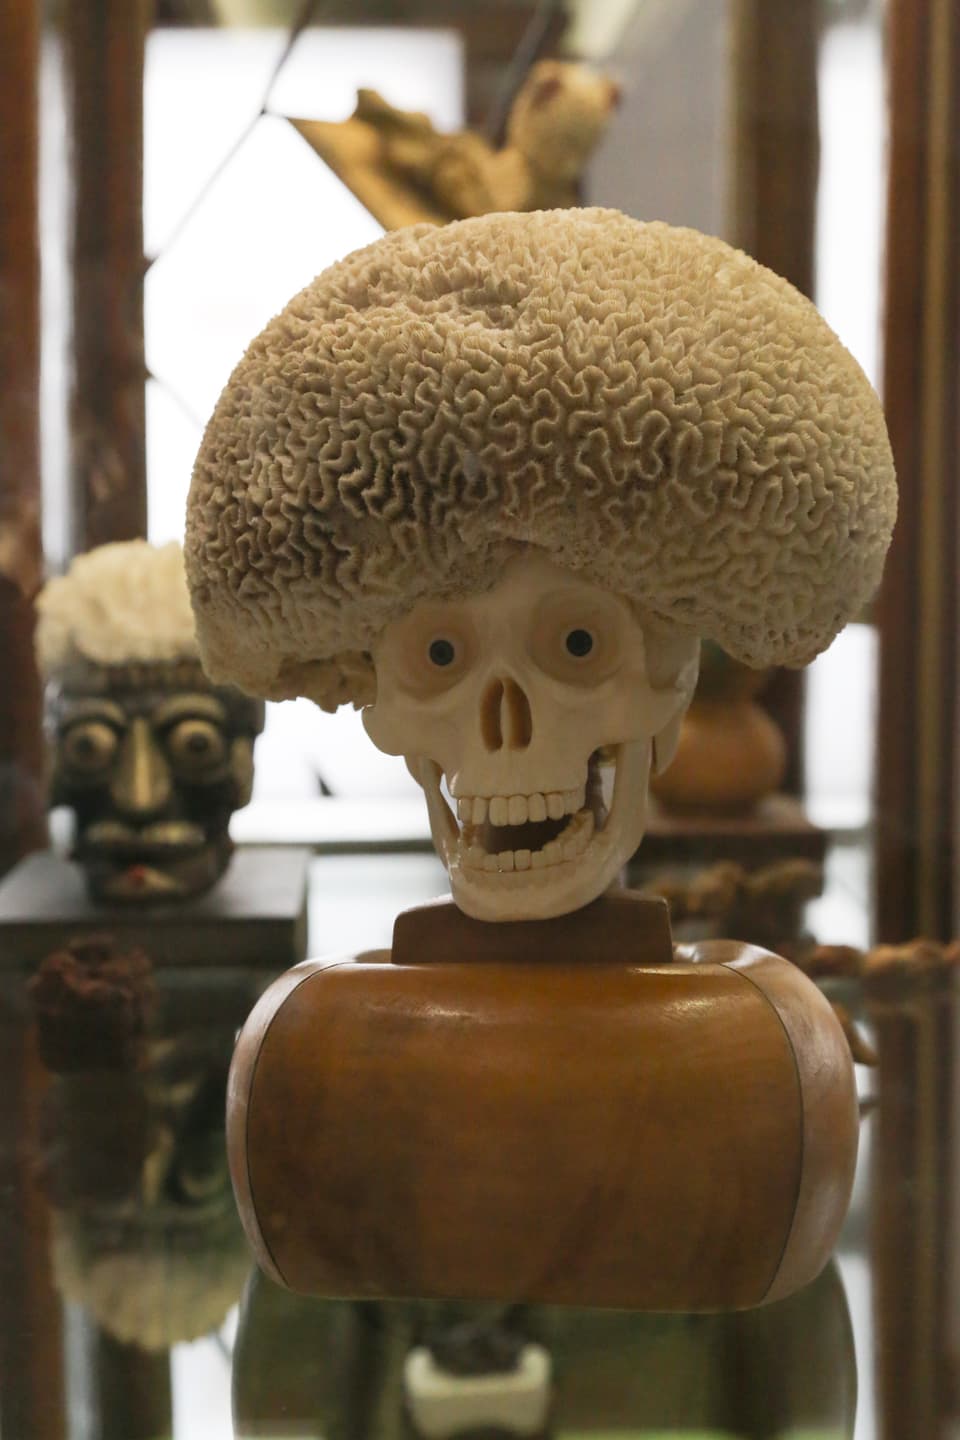 Ein Objekt, bestehend aus einem Totenschädels mit Pupillen, auf seinem Kopf eine Muschel, die wie eine Perücke aussieht. 